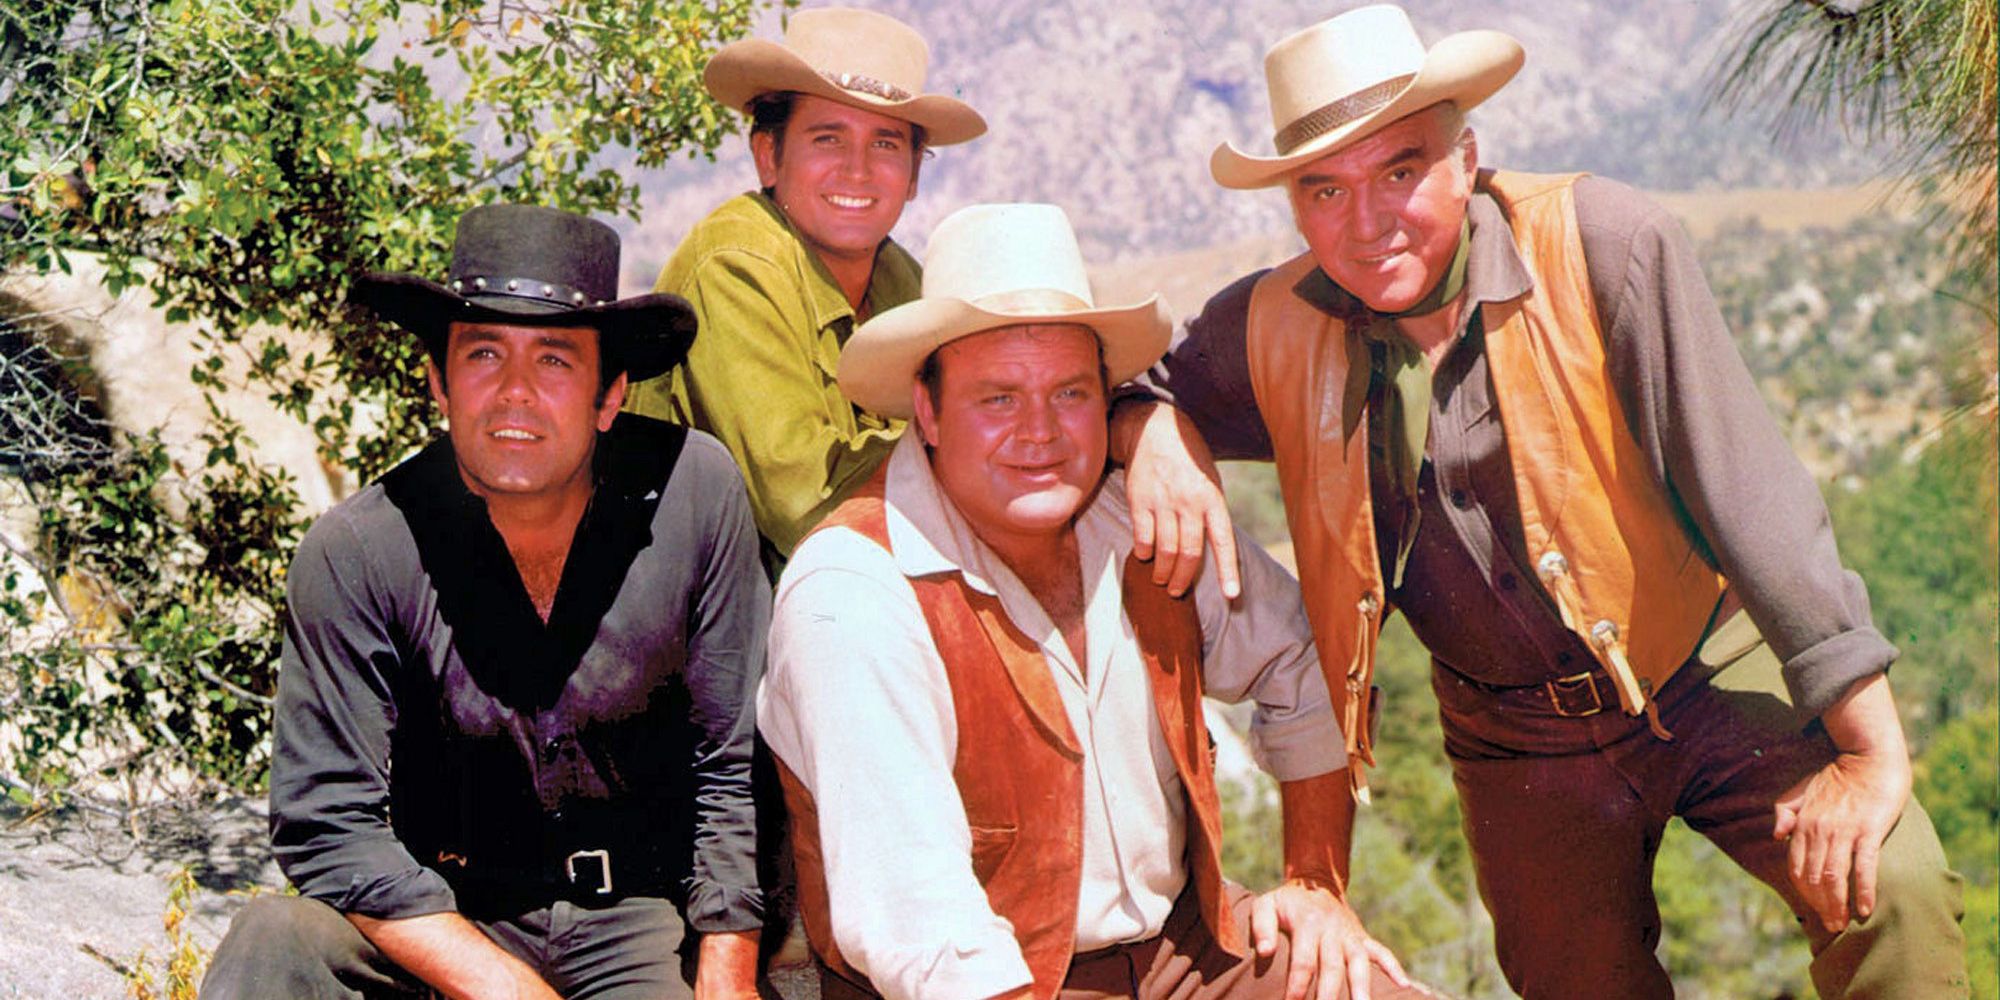 Il cast di Bonanza in posa, tutti con cappelli da cowboy.